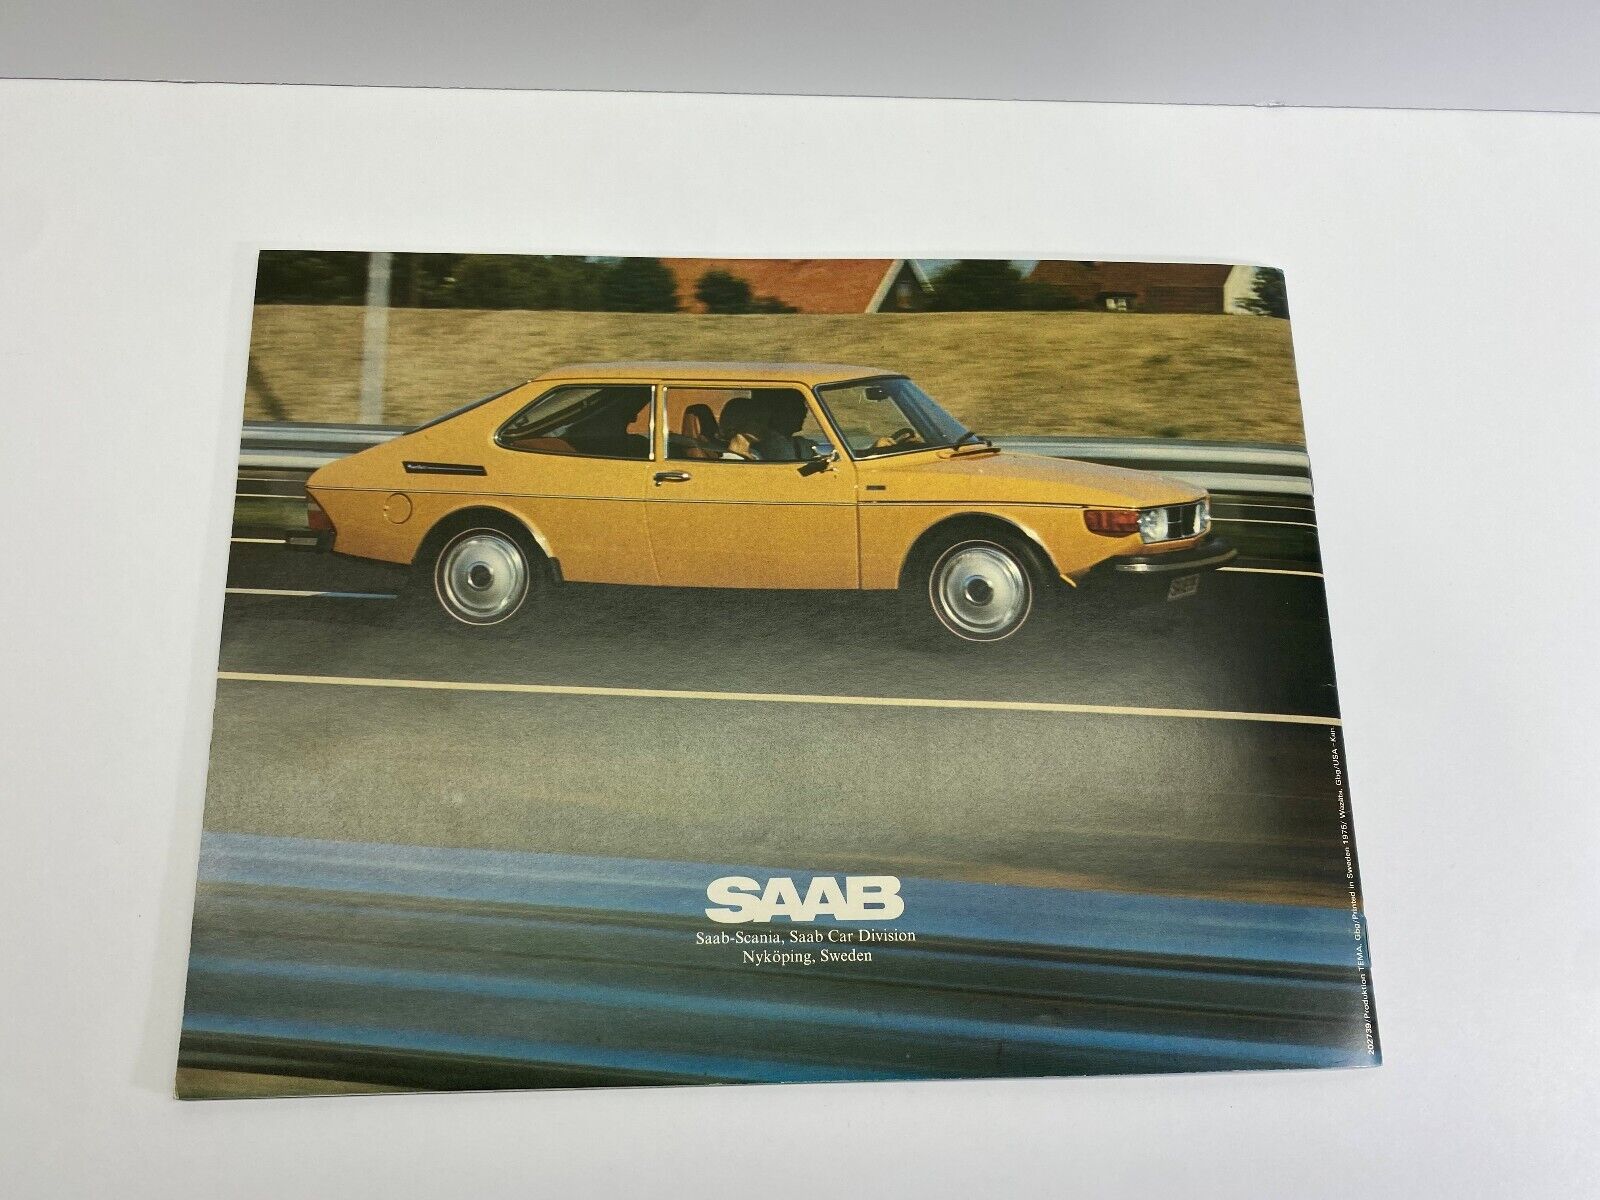 SAAB 1975 Dealer Catalog 99 GL Sedan, 99 GL WagonBack 99 EMS New Condition NoRes Без бренда - фотография #7